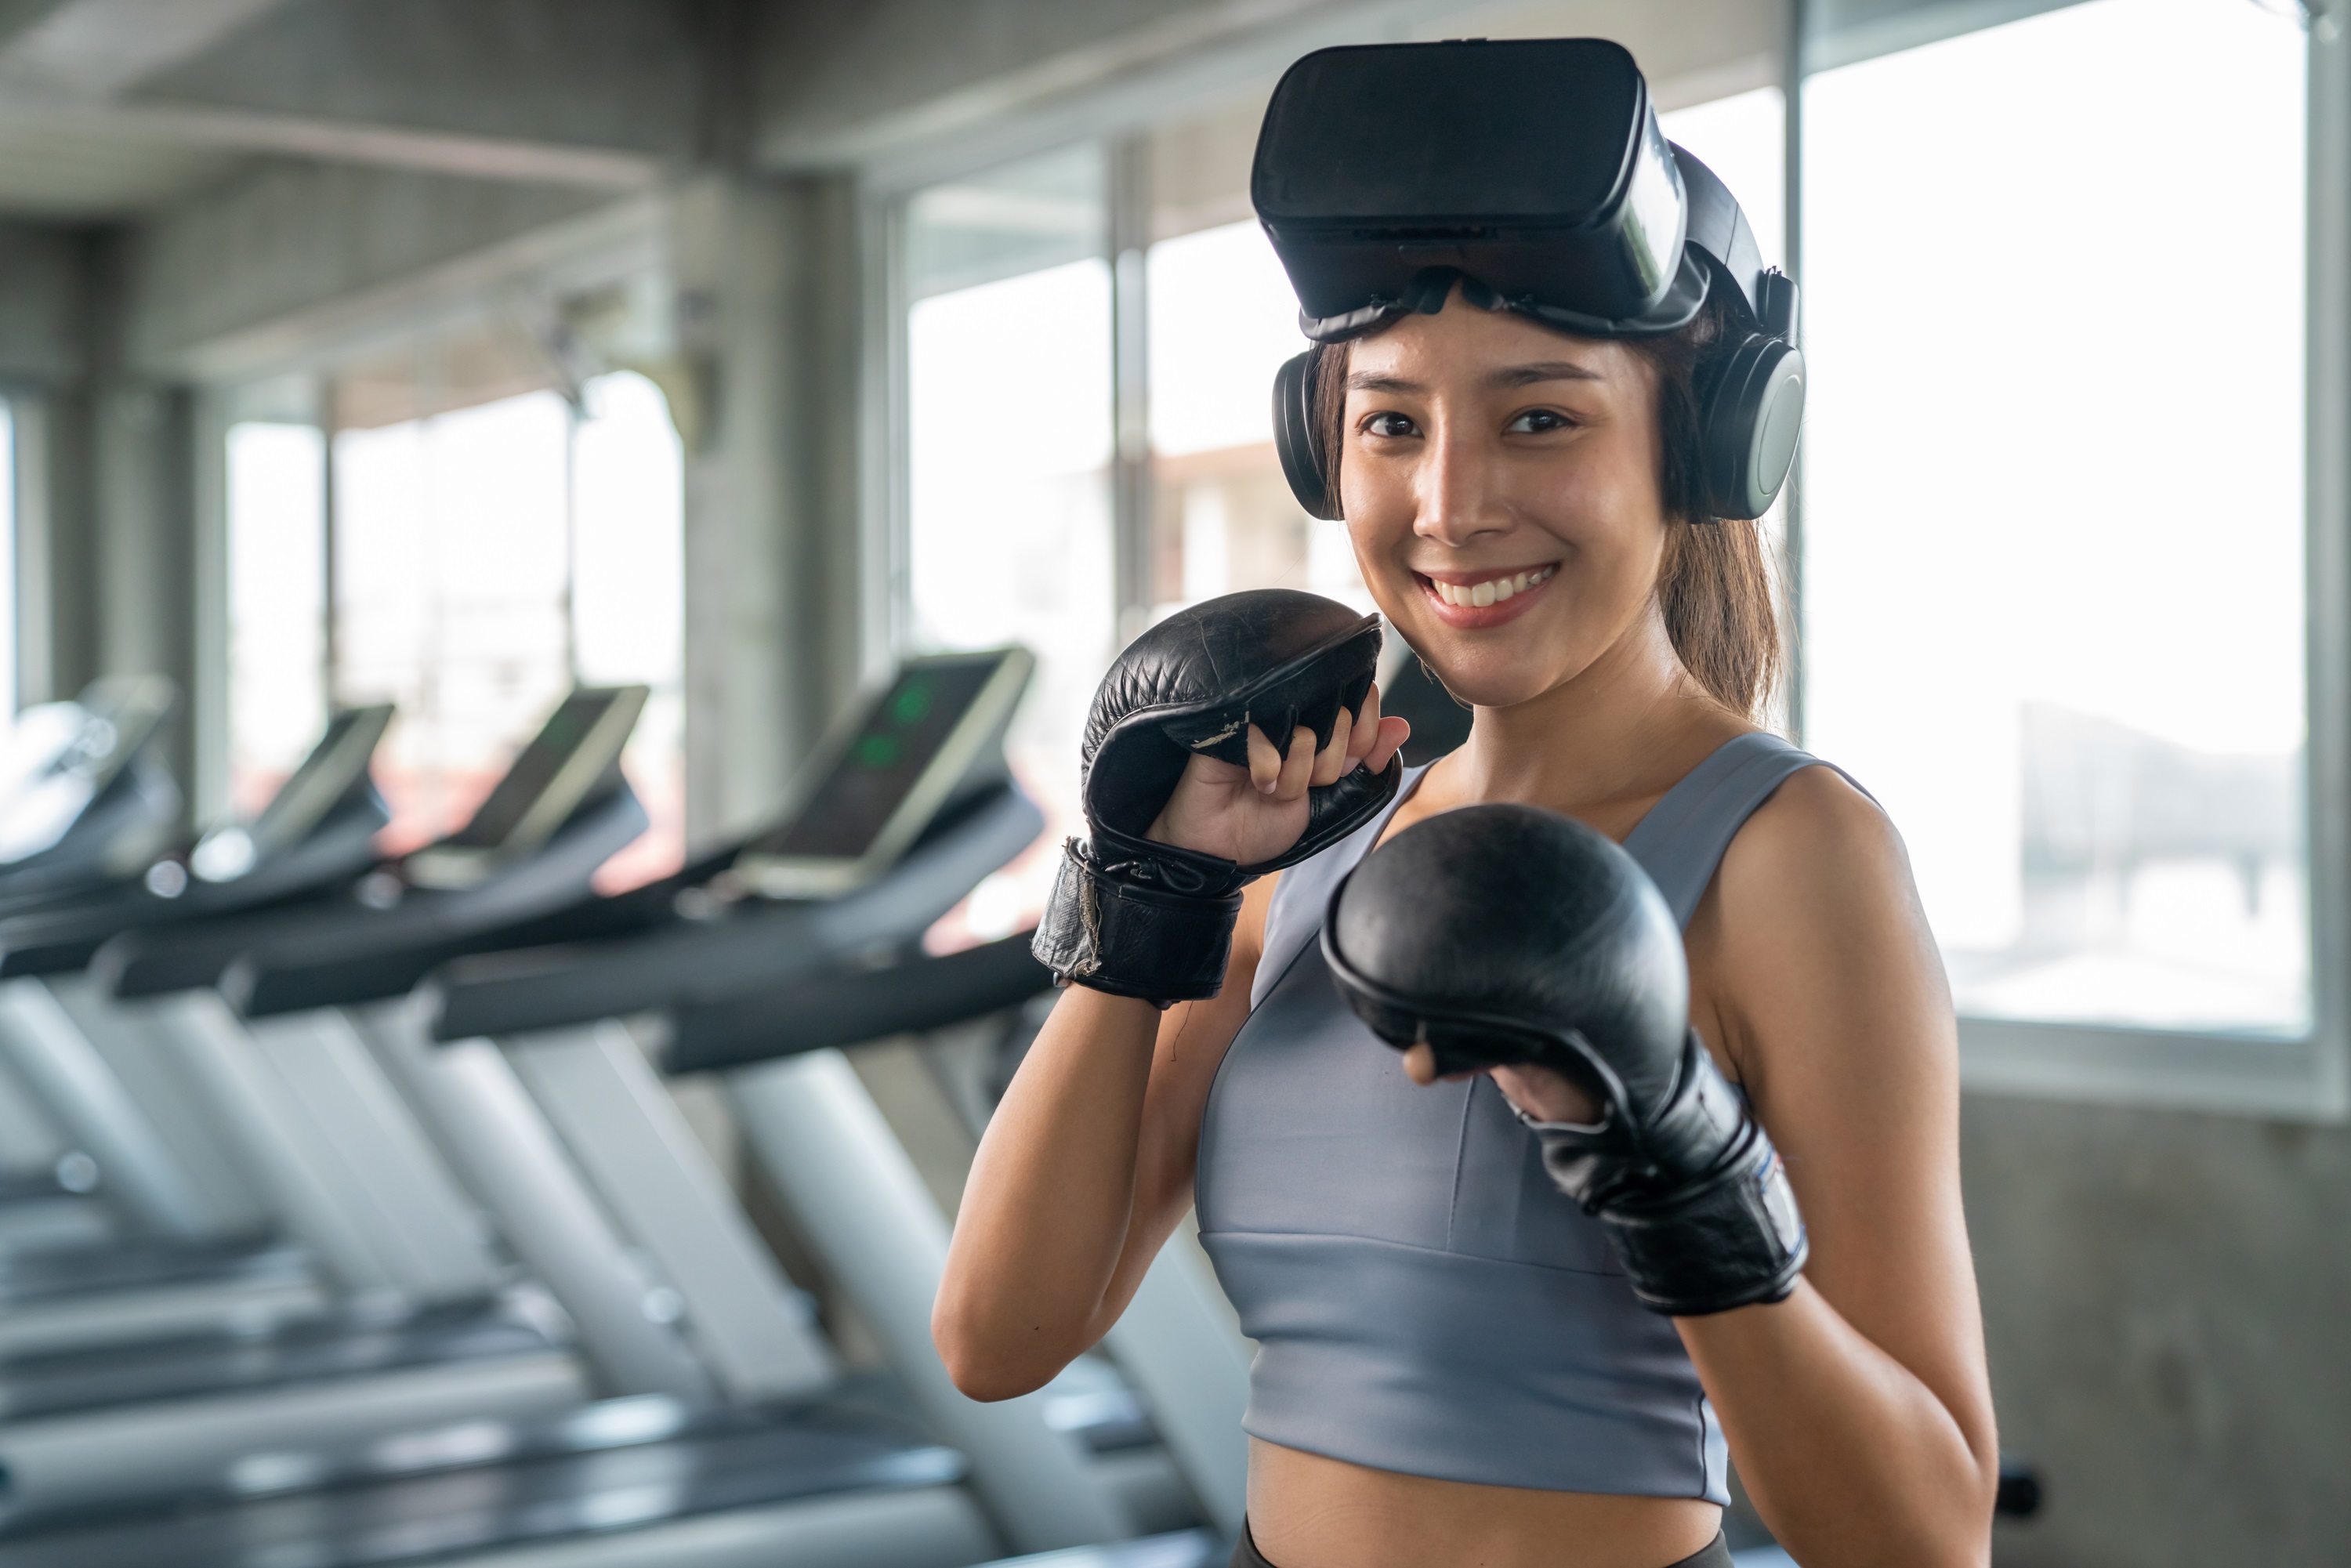 La boxe fait partie des sports olympiques qui utilise la réalité virtuelle pour préparer ses athlètes. Grâce à la VR, les boxeurs peuvent travailler leurs mouvements d'attaque ou de défense et anticiper les coups de l'adversaire en analysant son comportement. © CandyRetriever, Adobe Stock.